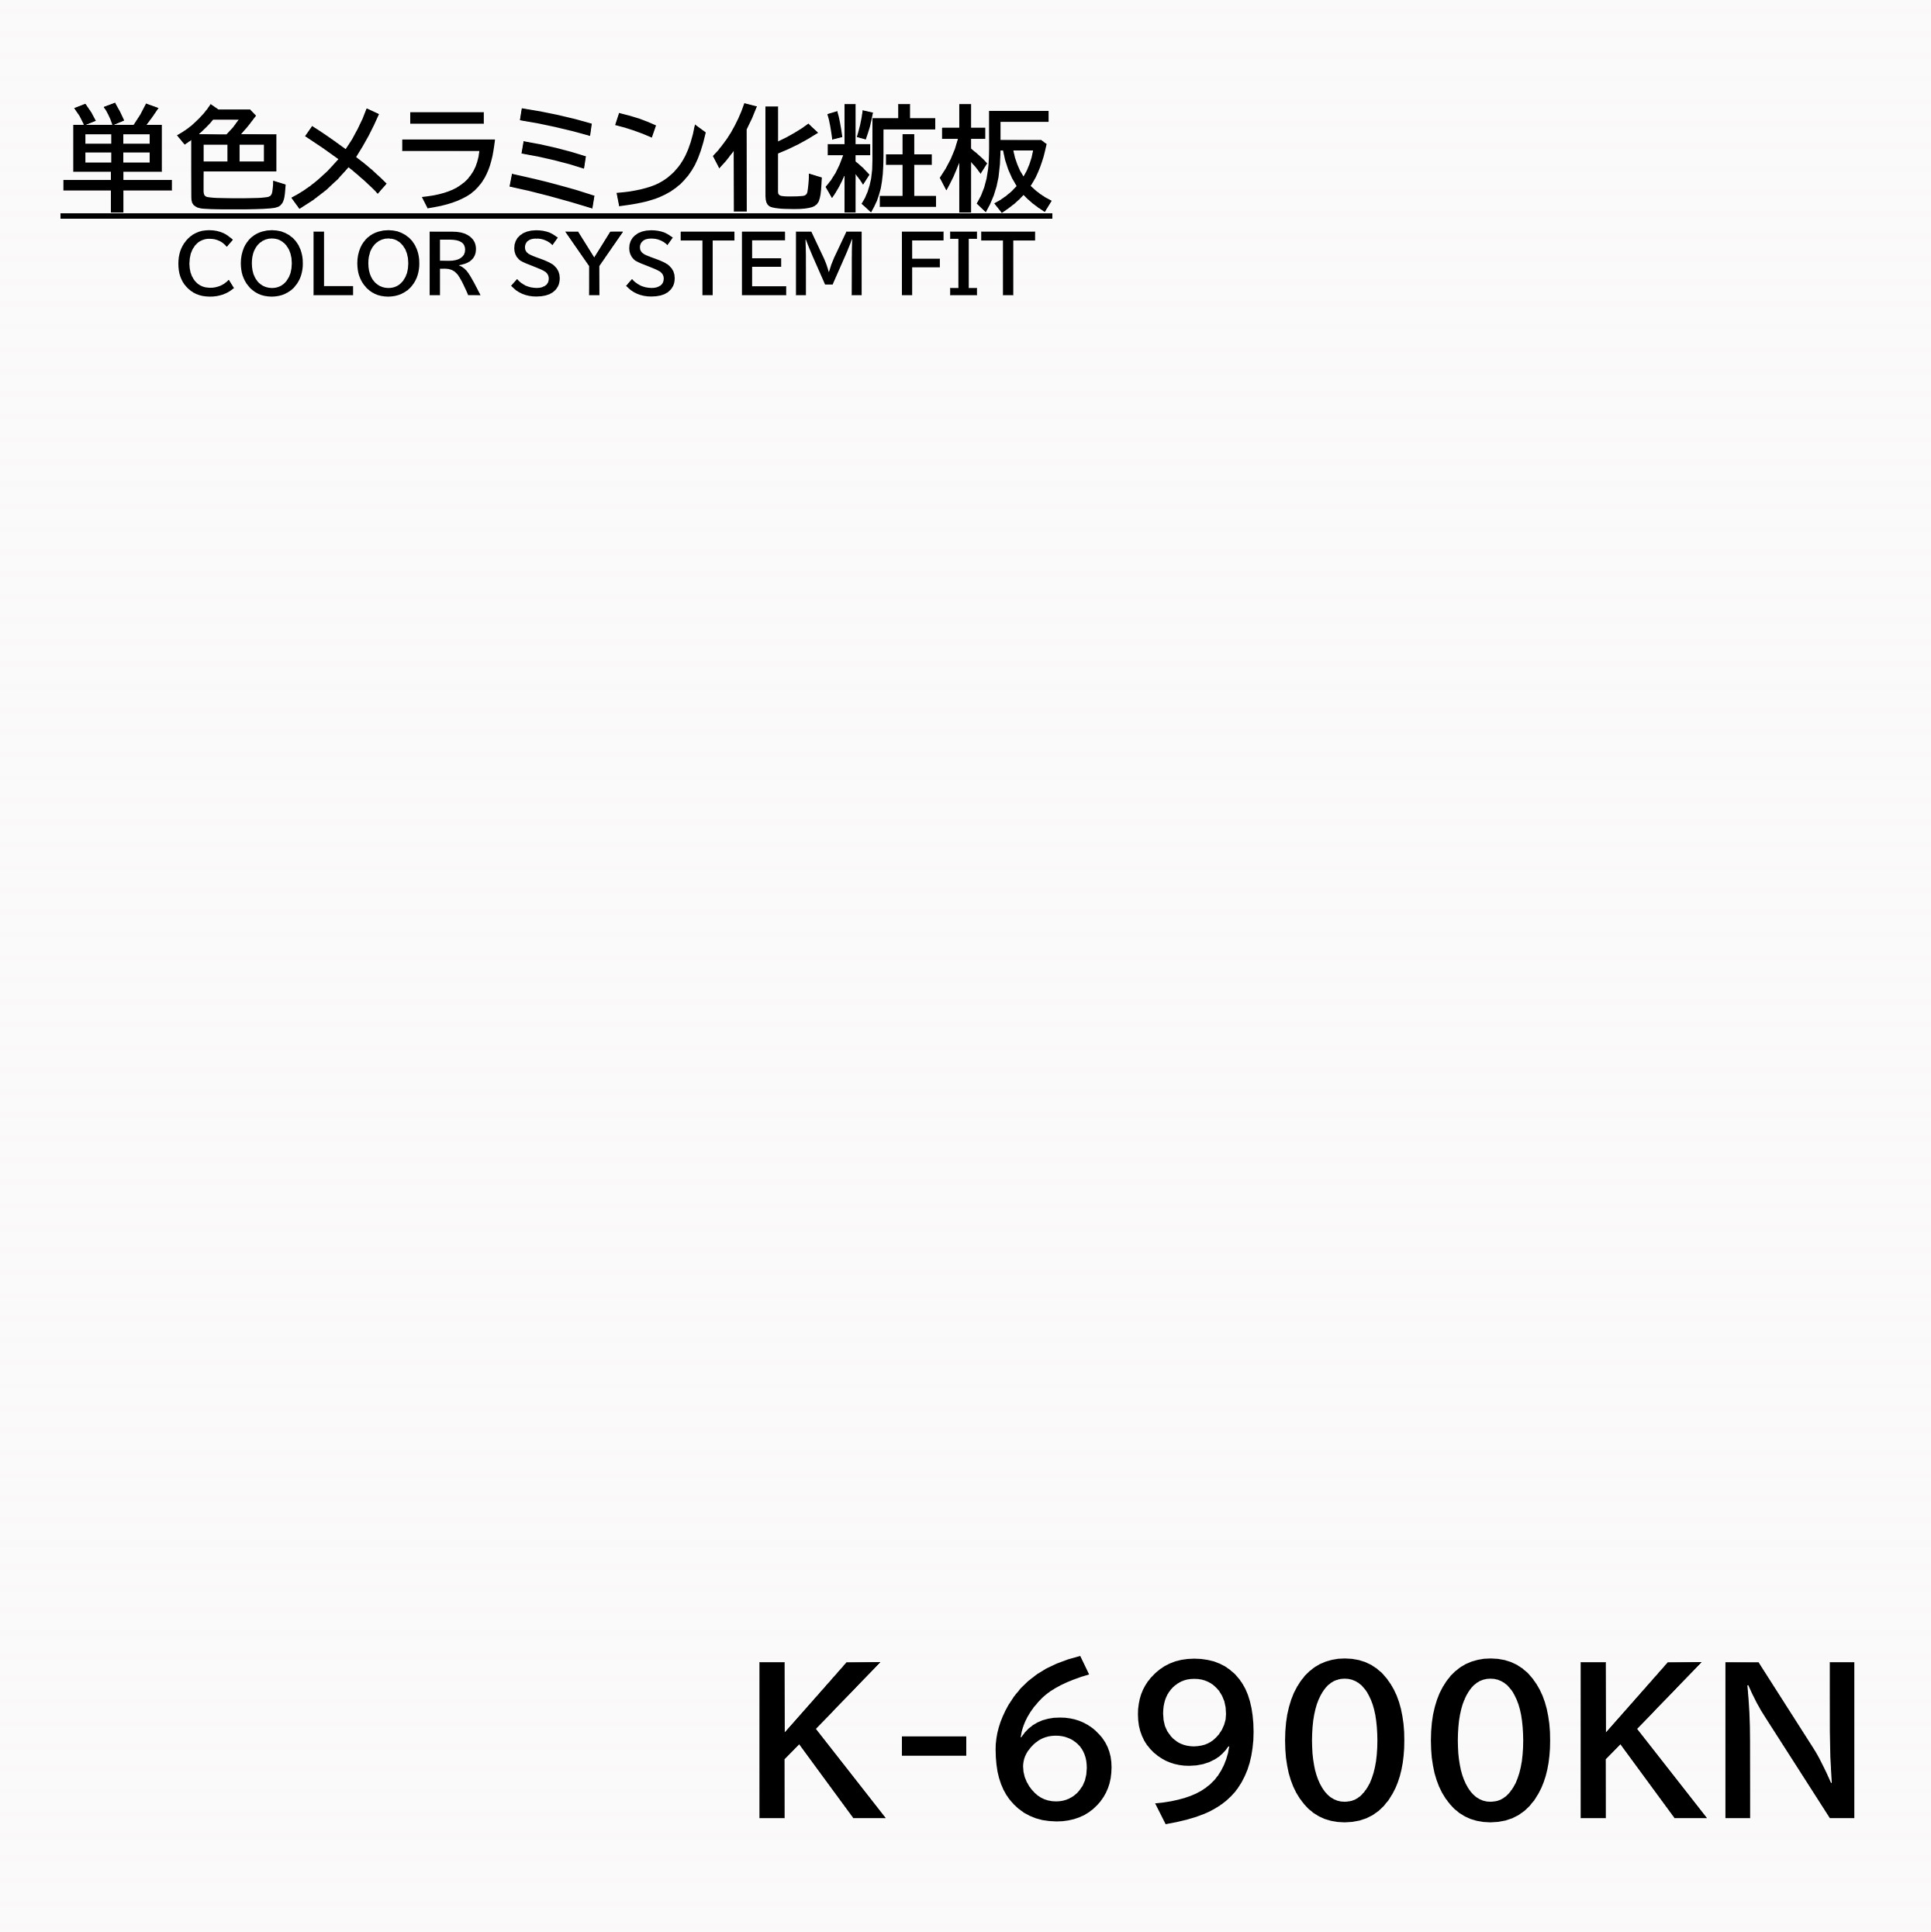 メラミン化粧板 カラーシステムフィット K-6900KN ベースカラー 4×8 0.95mm 1230×2450mm オフホワイト 単色 化粧合板